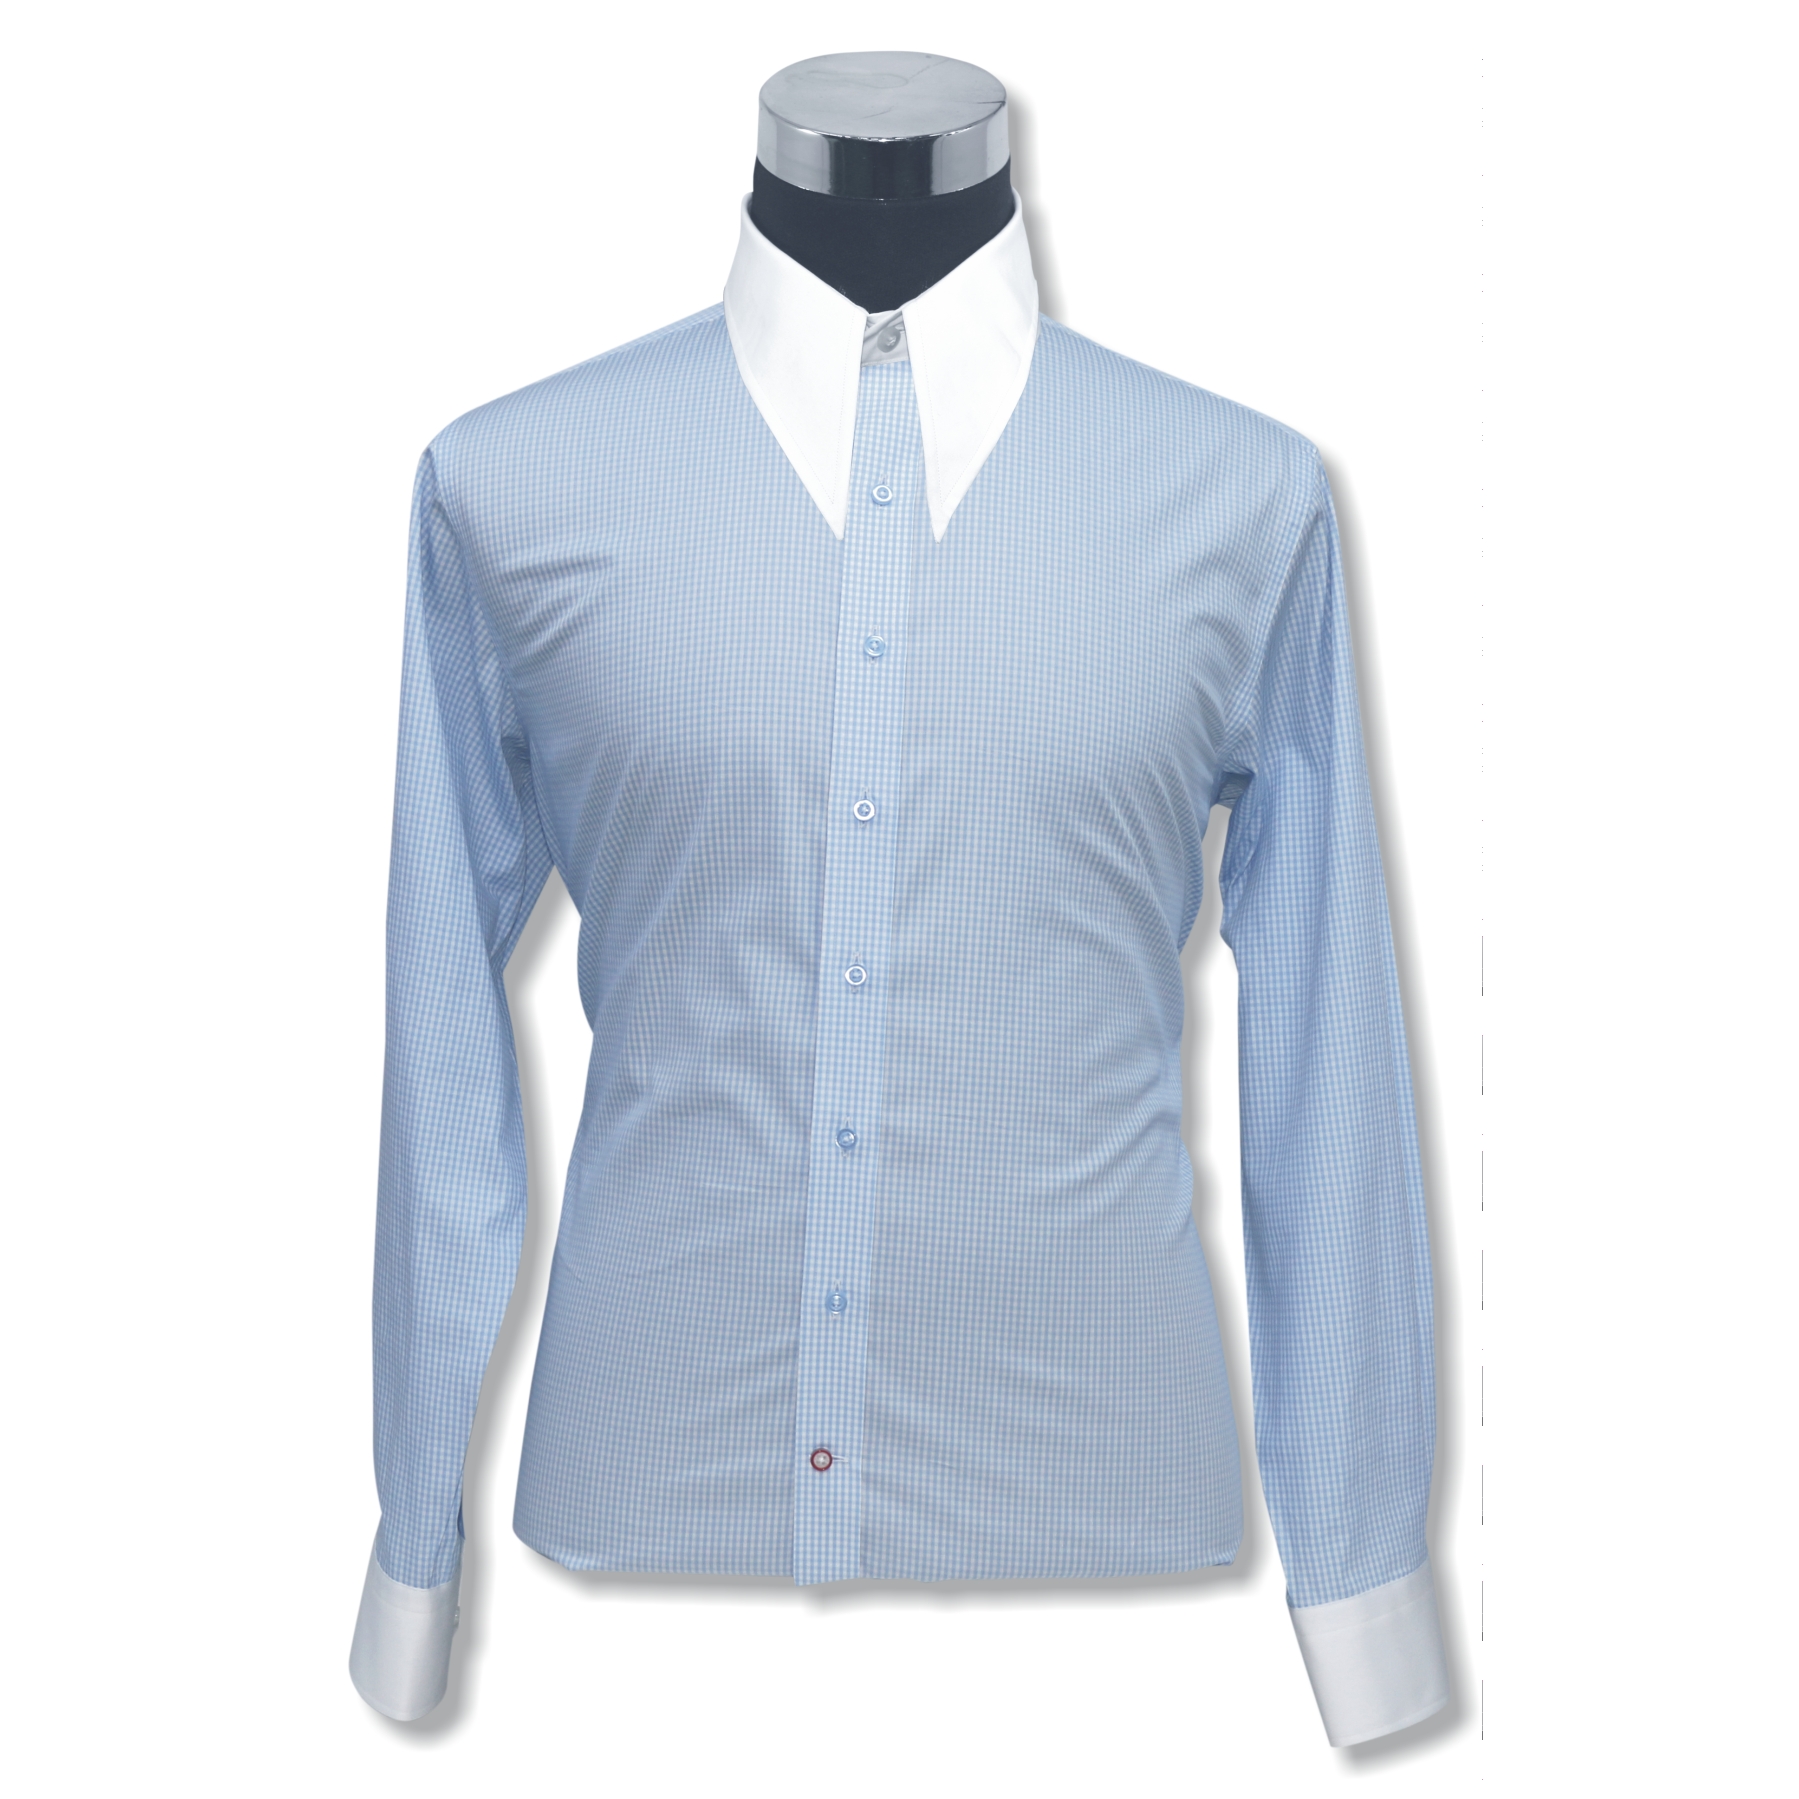 Black-Gingham-Checks-Spearpoint Collar Shirt - John Clothier London